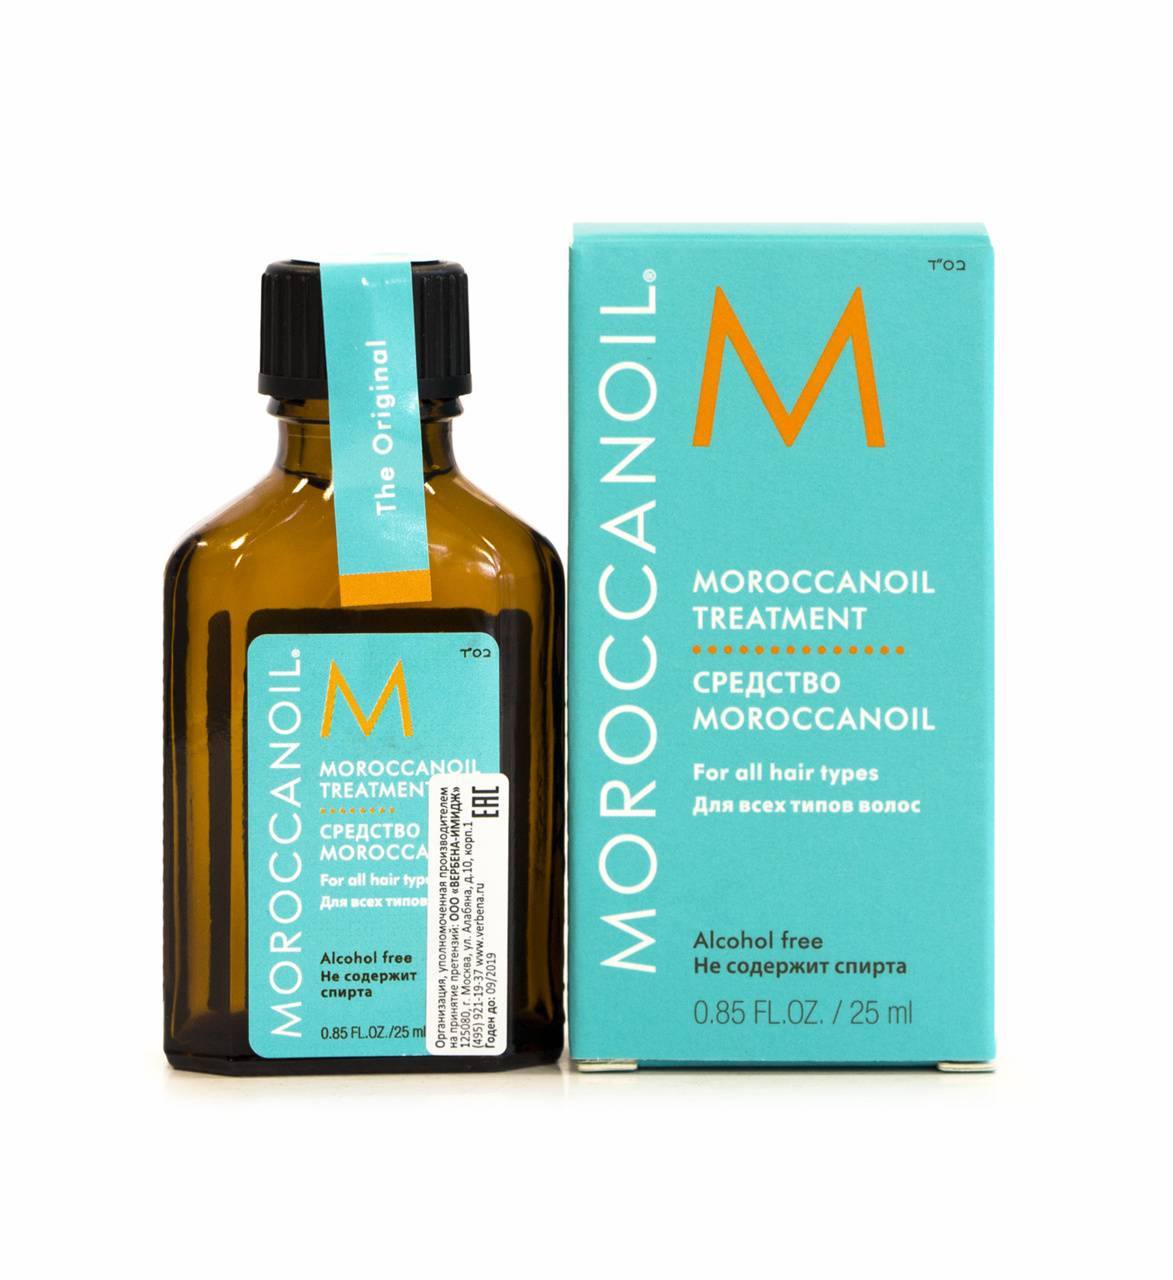 Масло для волос moroccanoil: состав марокканского средства, можно ли применять для всех типов волос, в том числе для светлых оттенков?